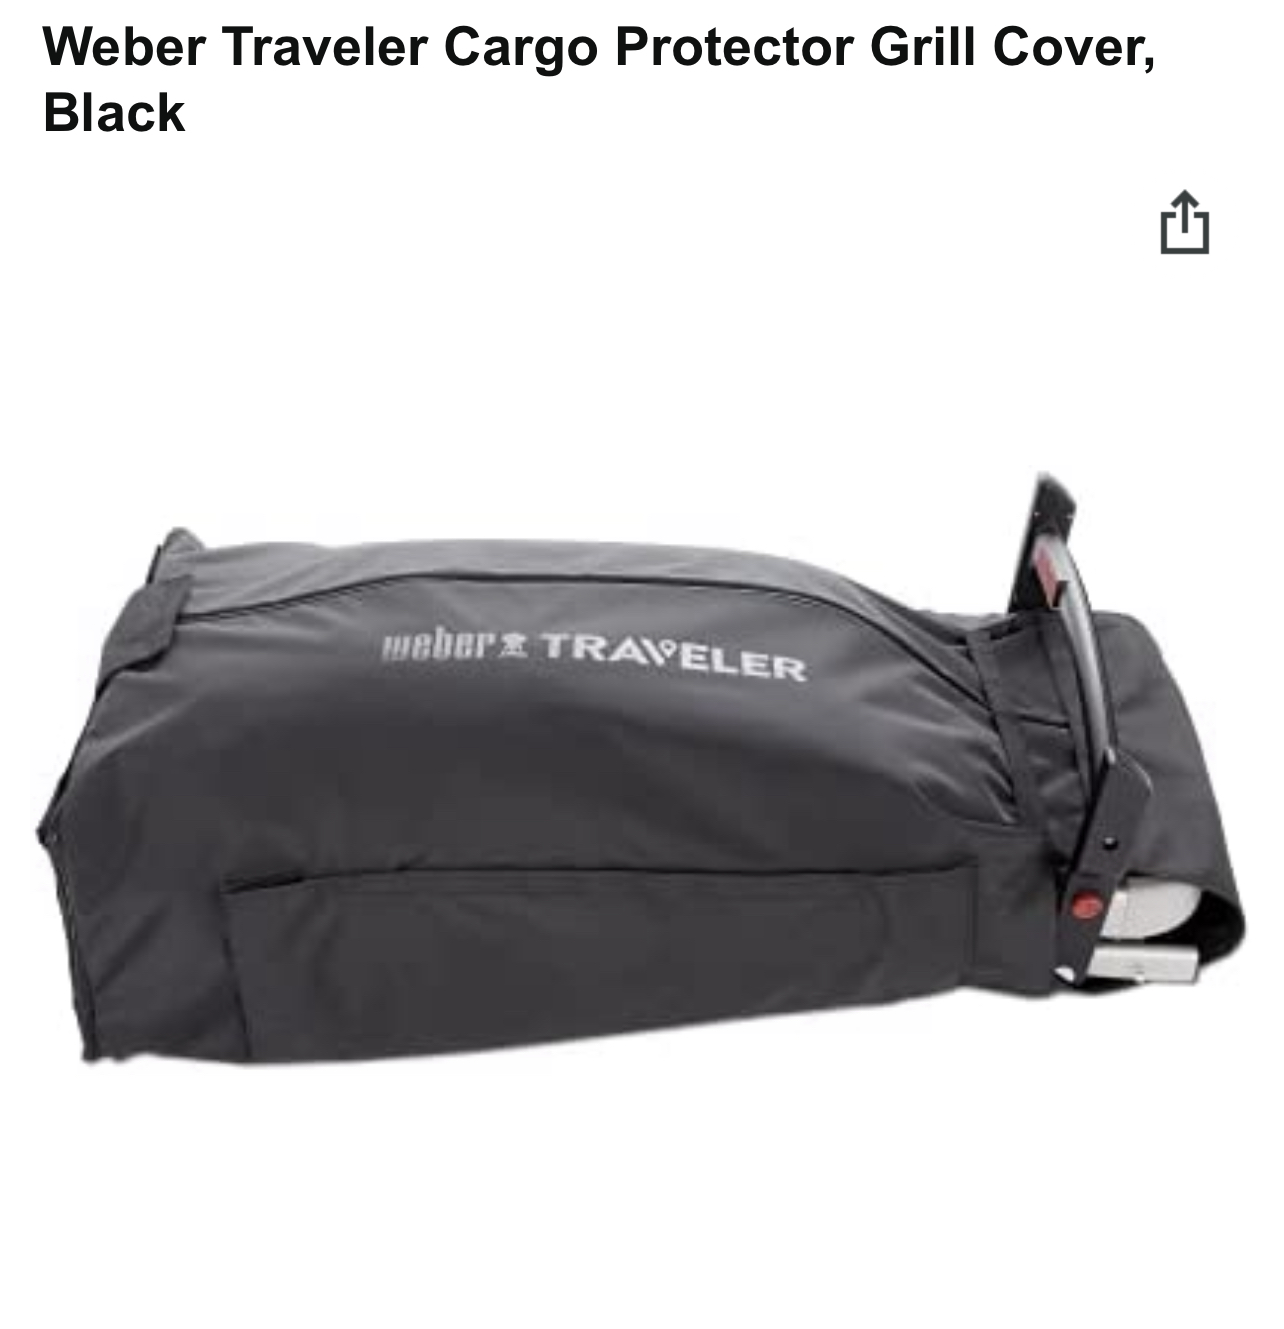 Weber Traveler Cargo Protector Grill Cover